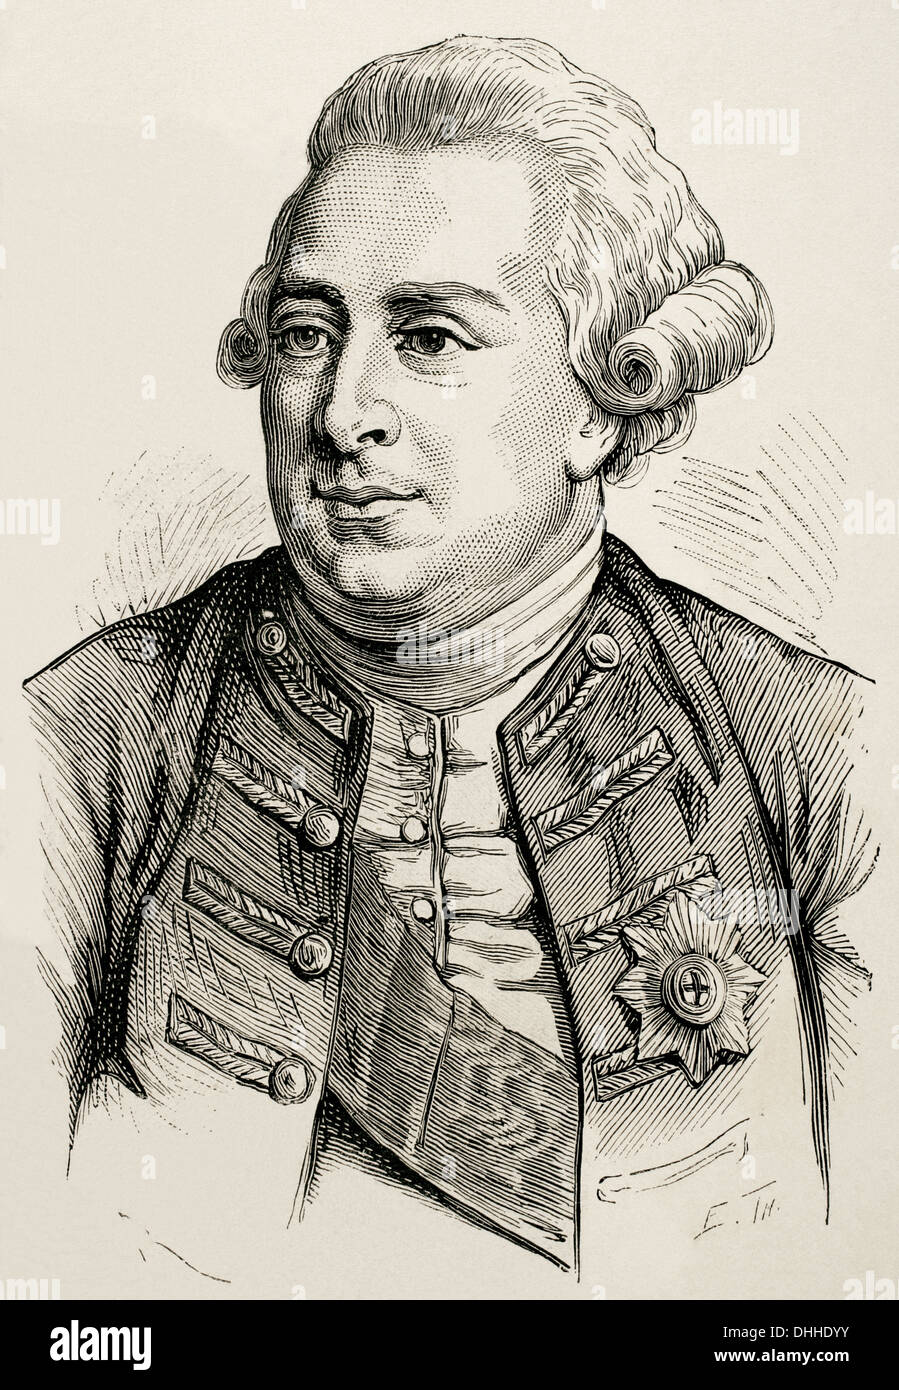 George III (1738-1820). König von Großbritannien und Irland später König des Vereinigten Königreichs und von Hannover. Gravur. Stockfoto